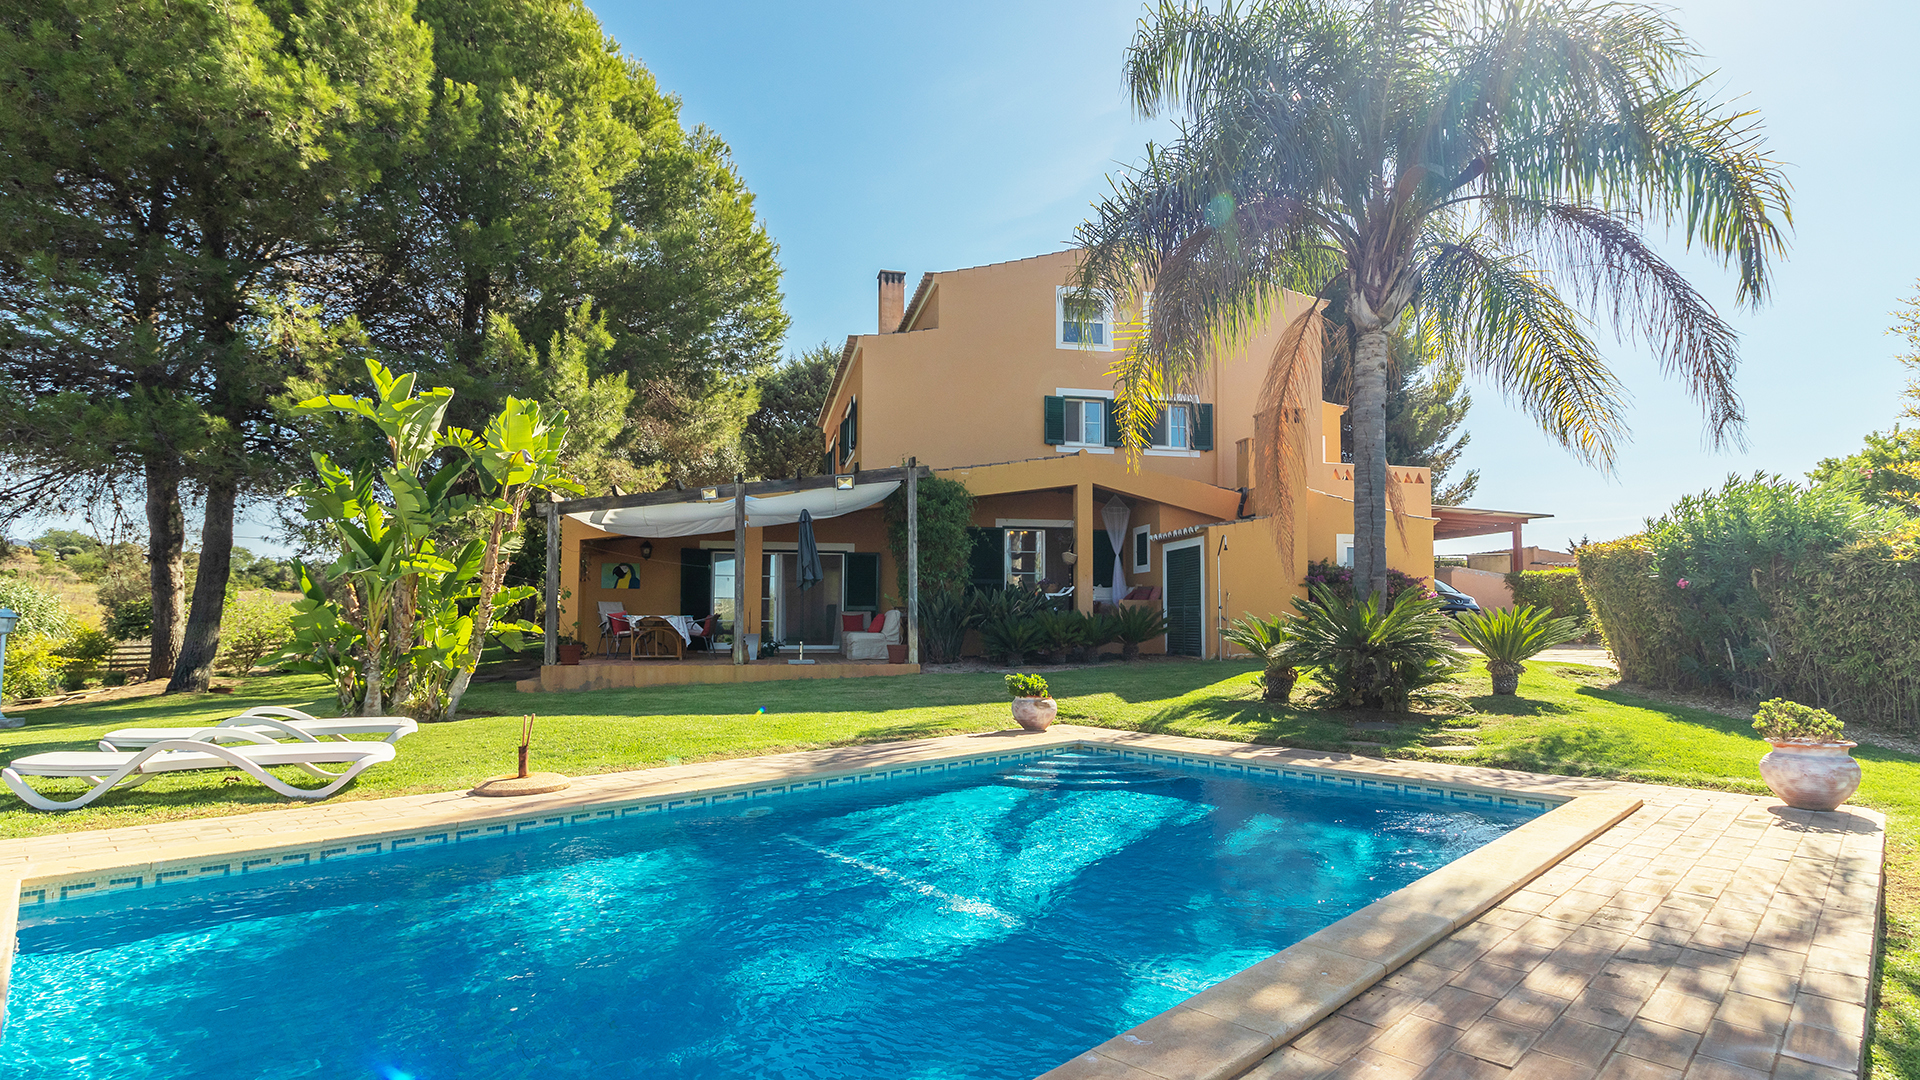 Charmante 4 SZ Villa auf grossem Grundstück mit Pool, Carvoeiro West Algarve | PCG1849 Villa mit 4 Schlafzimmern, davon 2 en-suite und einem komplett ausgestatteten Studio Apartment auf 3,6 ha grossem Grundstück in der Nähe von Lagoa und Carvoeiro. Eine Immobilie mit dieser Grösse Grundstück ist in dieser Lage einzig artig. Perfekt als permanenter Wohnsitz, eigene Ferienimmobilie und für die Ferienvermietung geeignet.